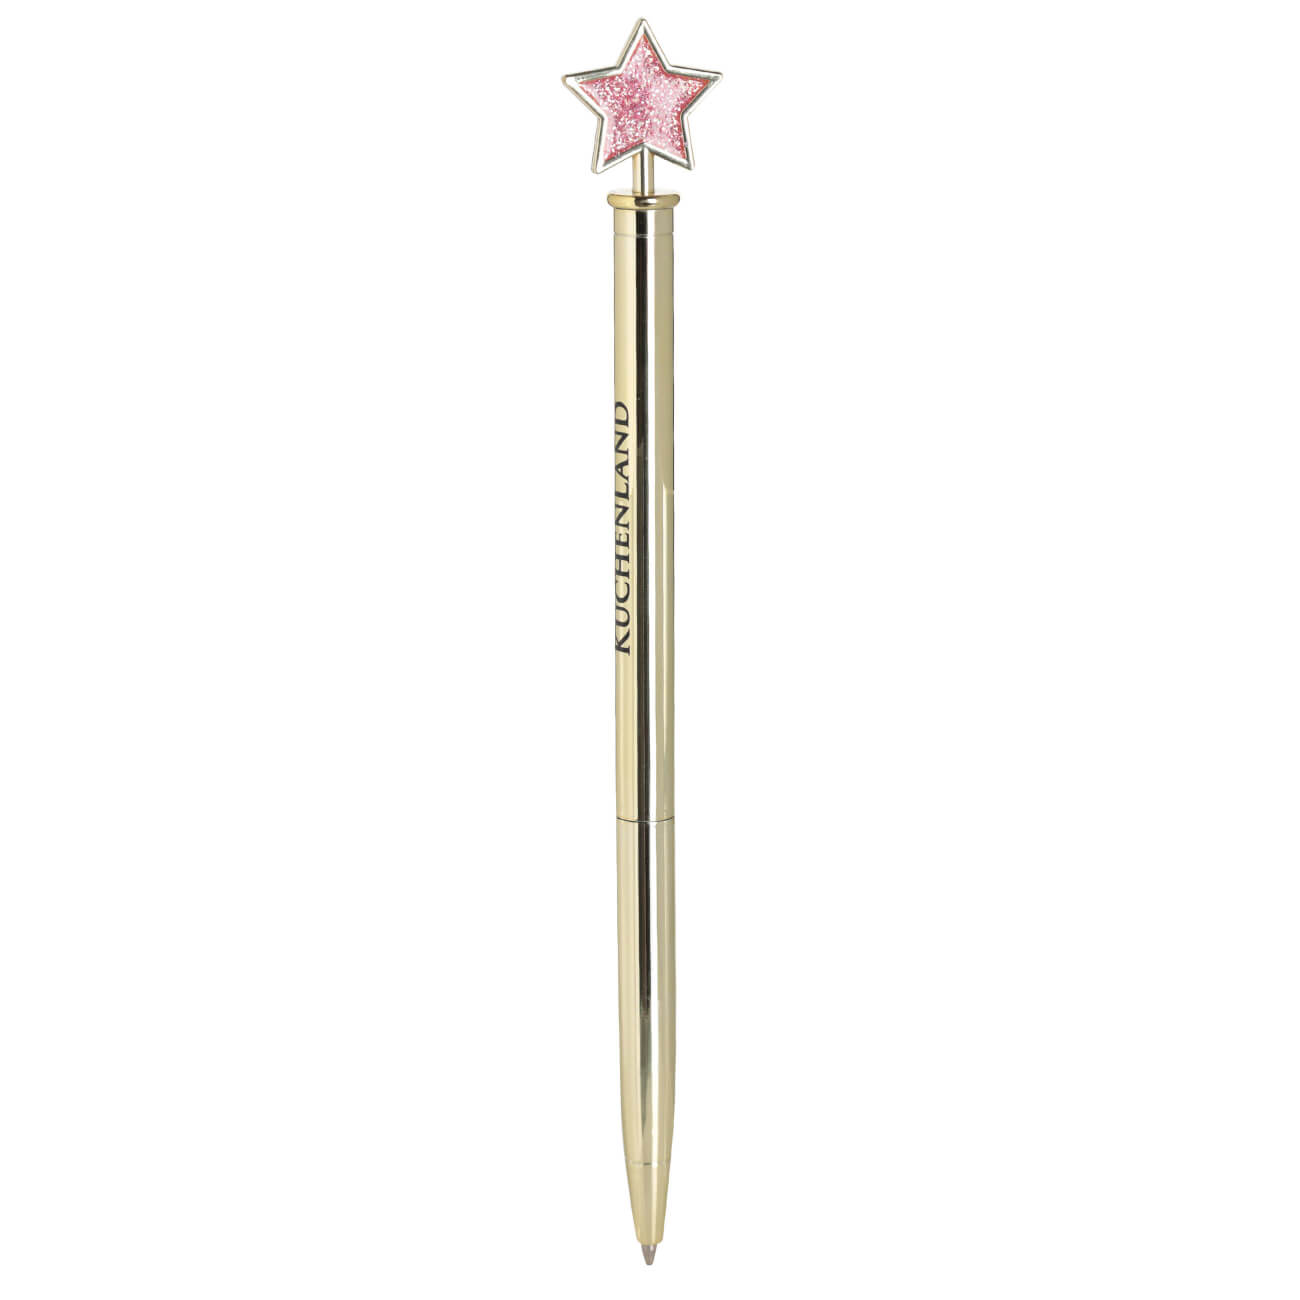 Ручка шариковая, 15 см, с фигуркой, металл, золотистая, Звезда, Draw figure изображение № 1